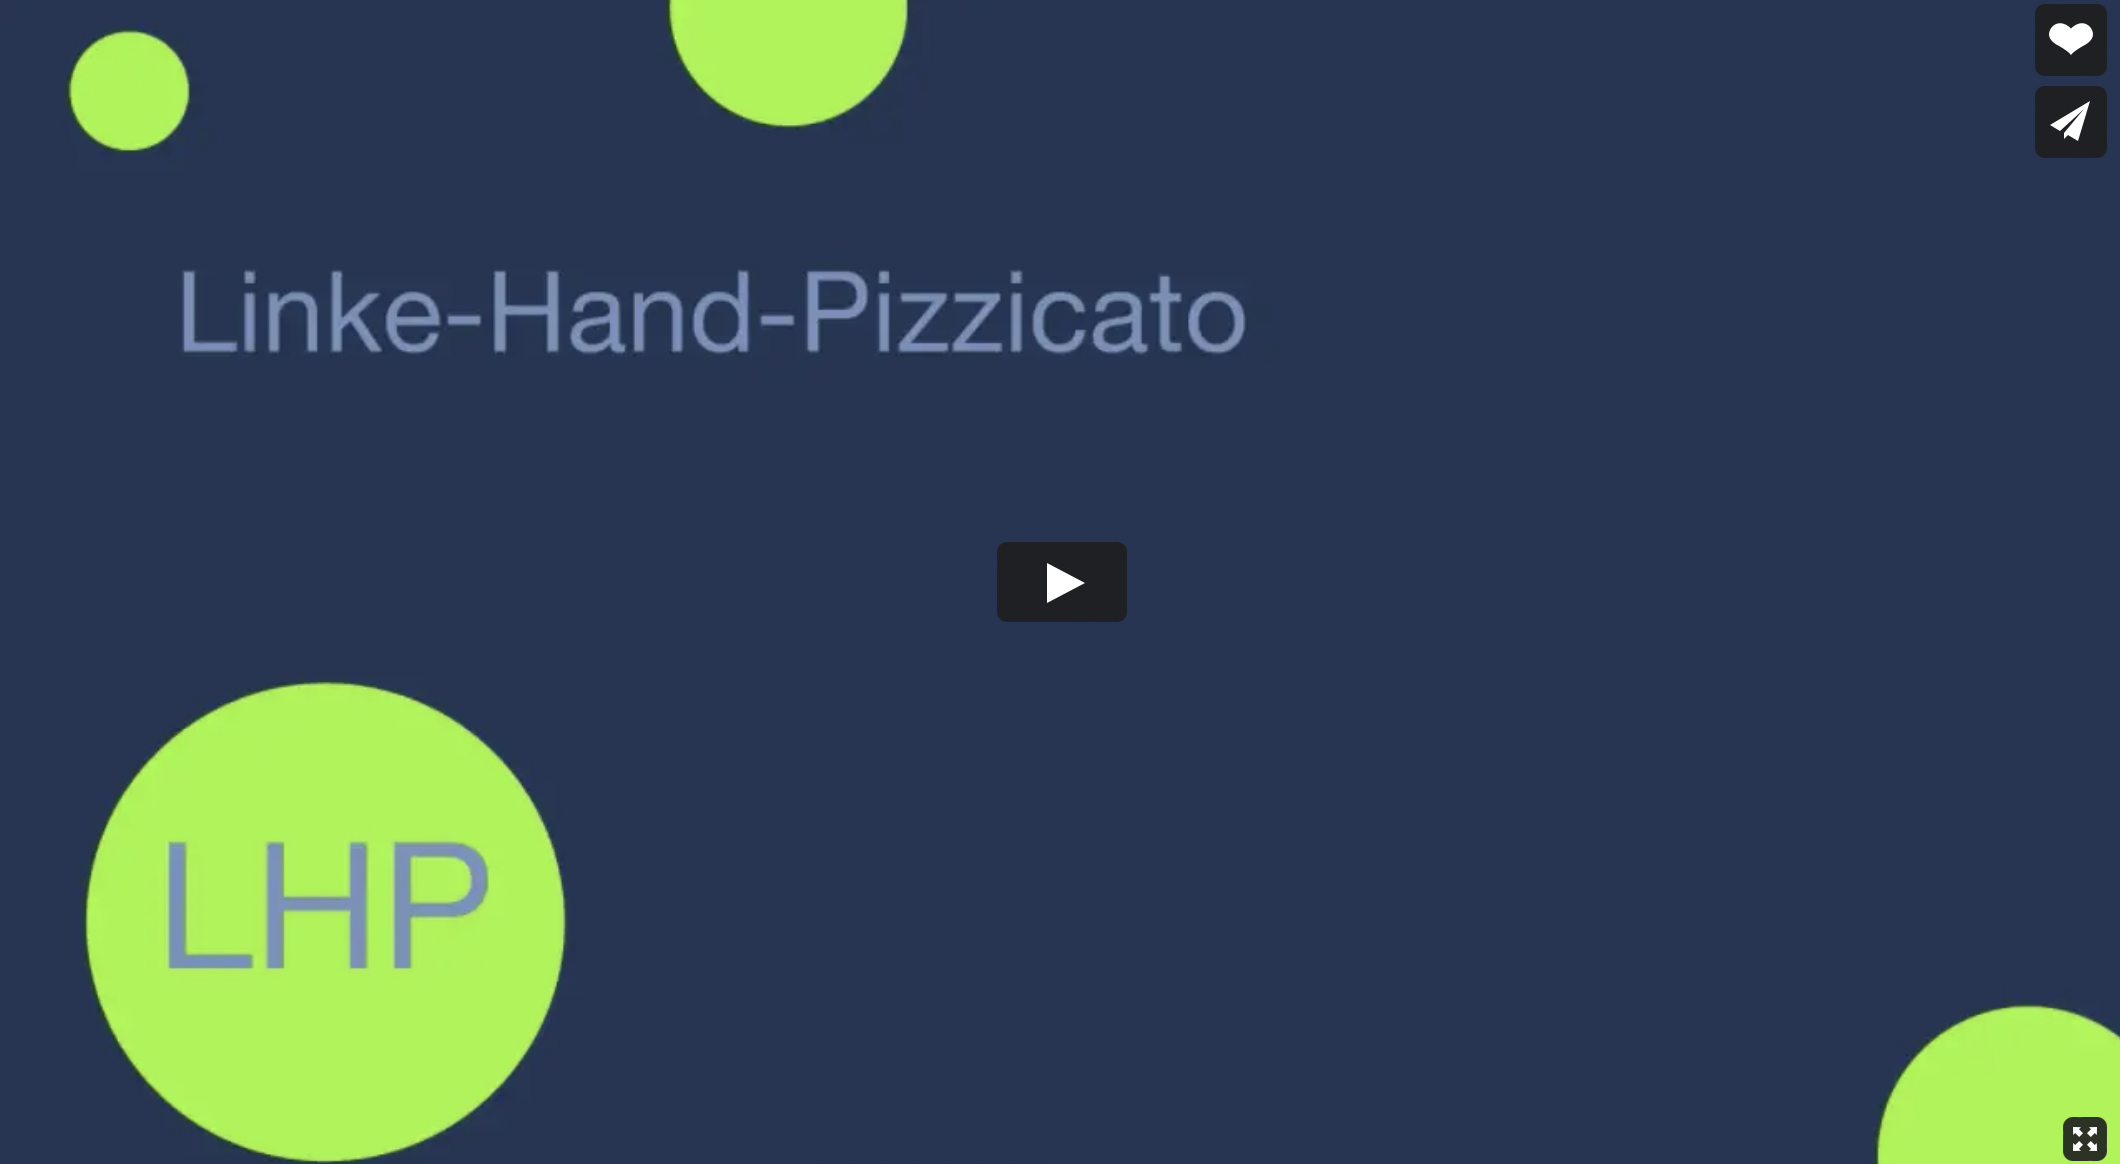 Linke-Hand-Pizzicato als Übetechnik